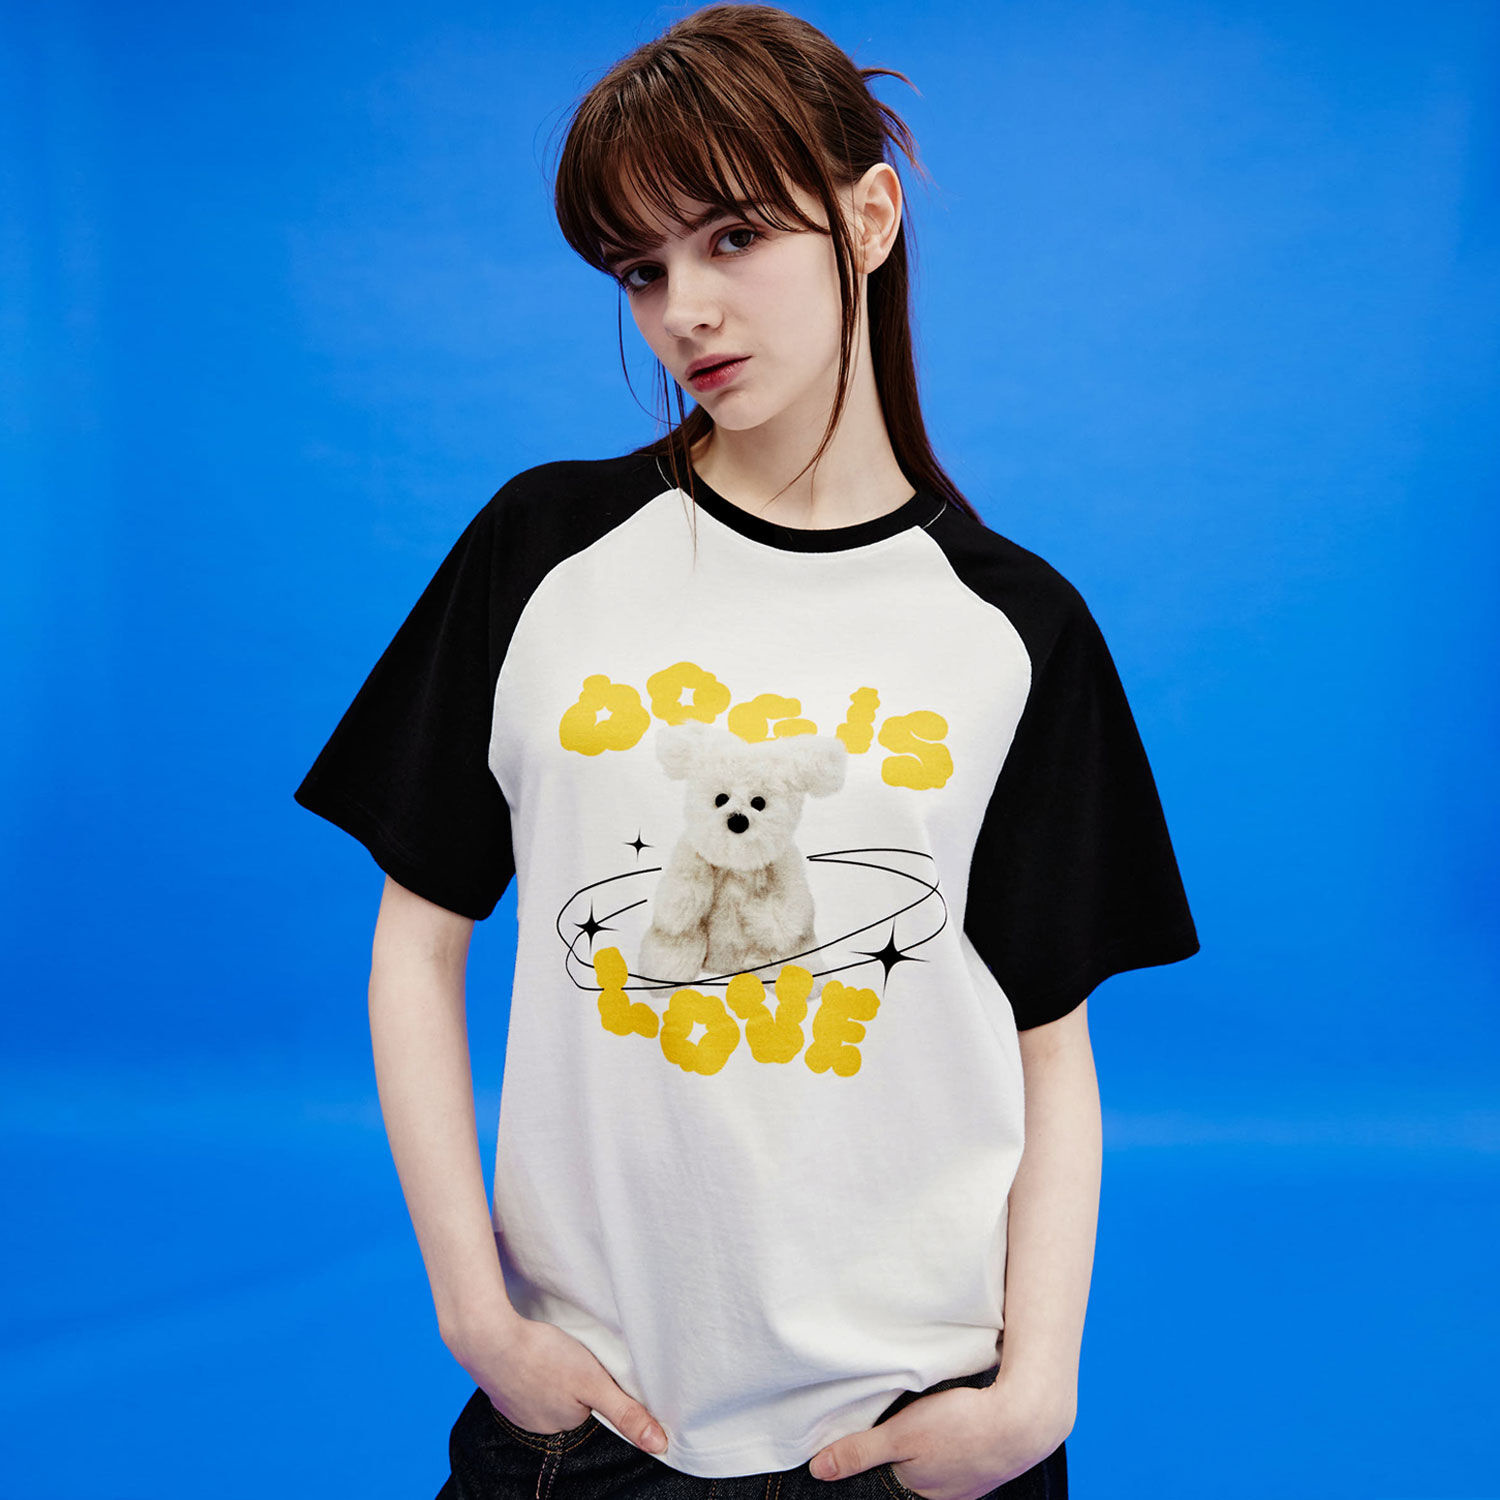 韓國WAIKEI - Dog Is Love Raglan Short Sleeve T-shirt White